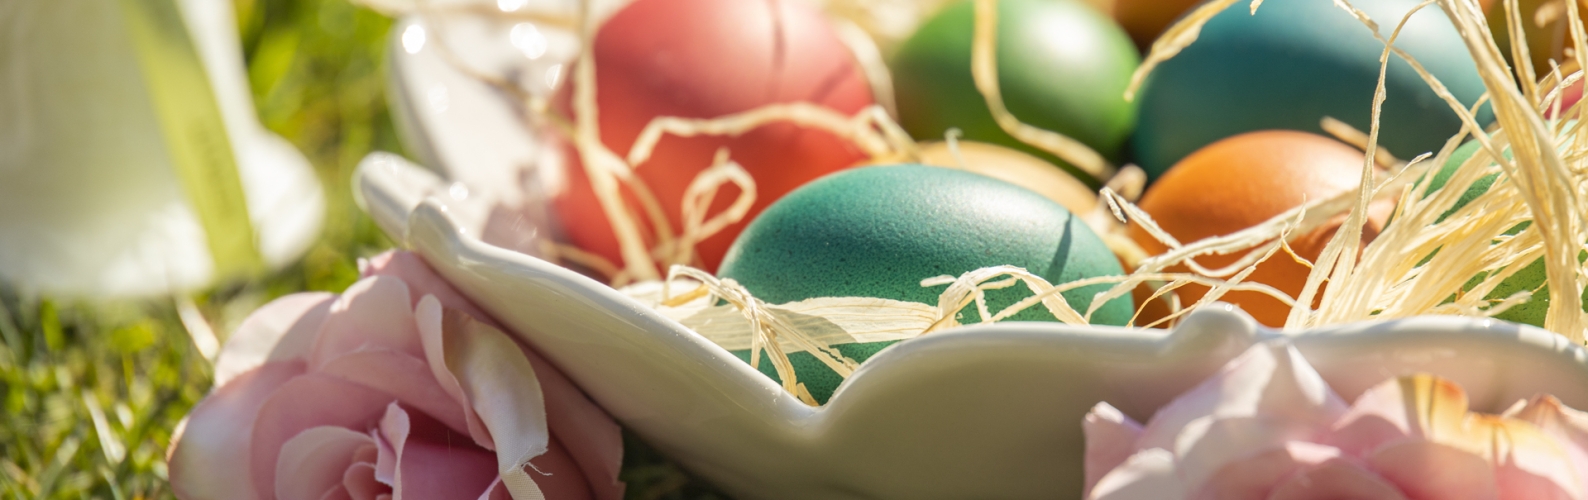 Sette curiosità sulle uova di Pasqua - HopeMedia Italia